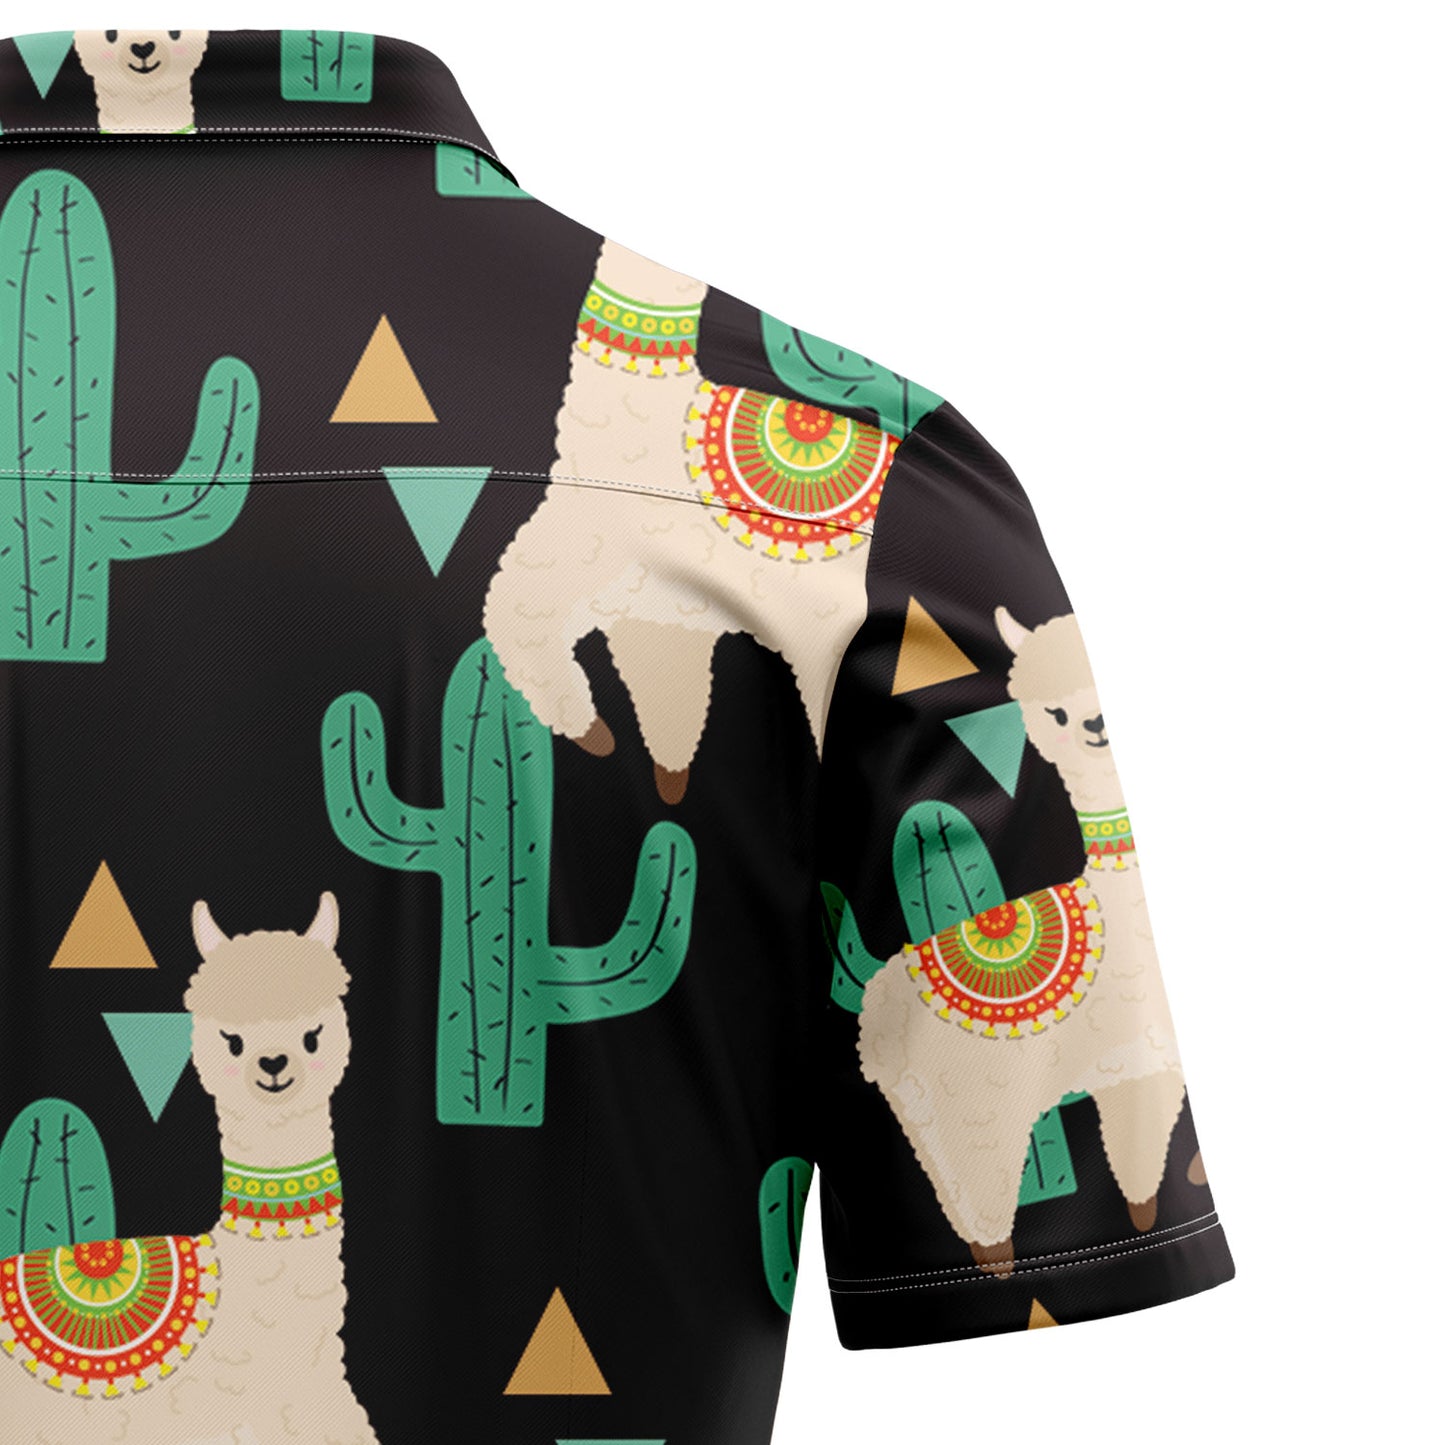 Llama Cactus Pattern TG5723 Hawaiian Shirt